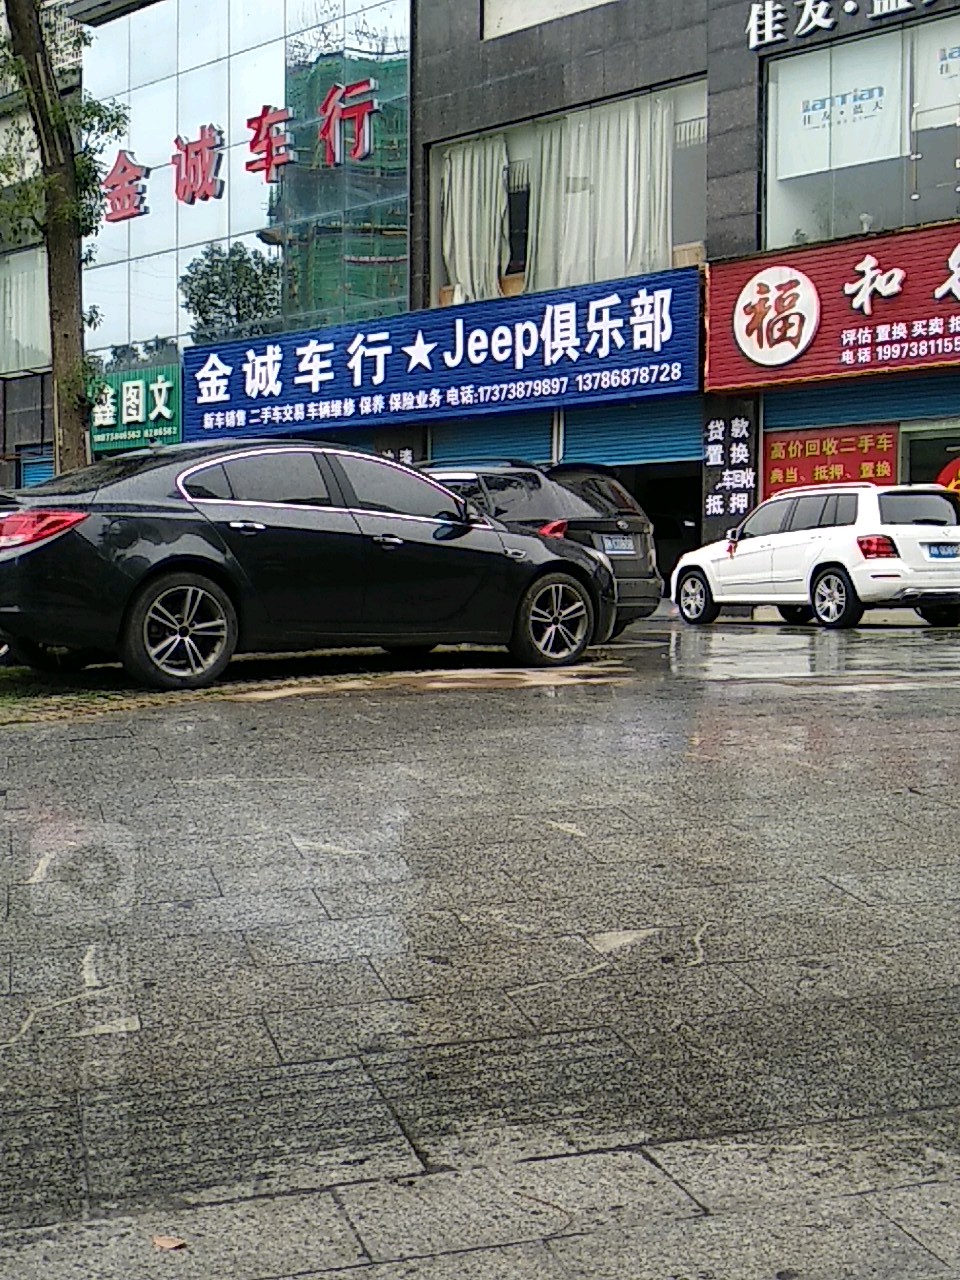 金誠車行 jeep俱樂部